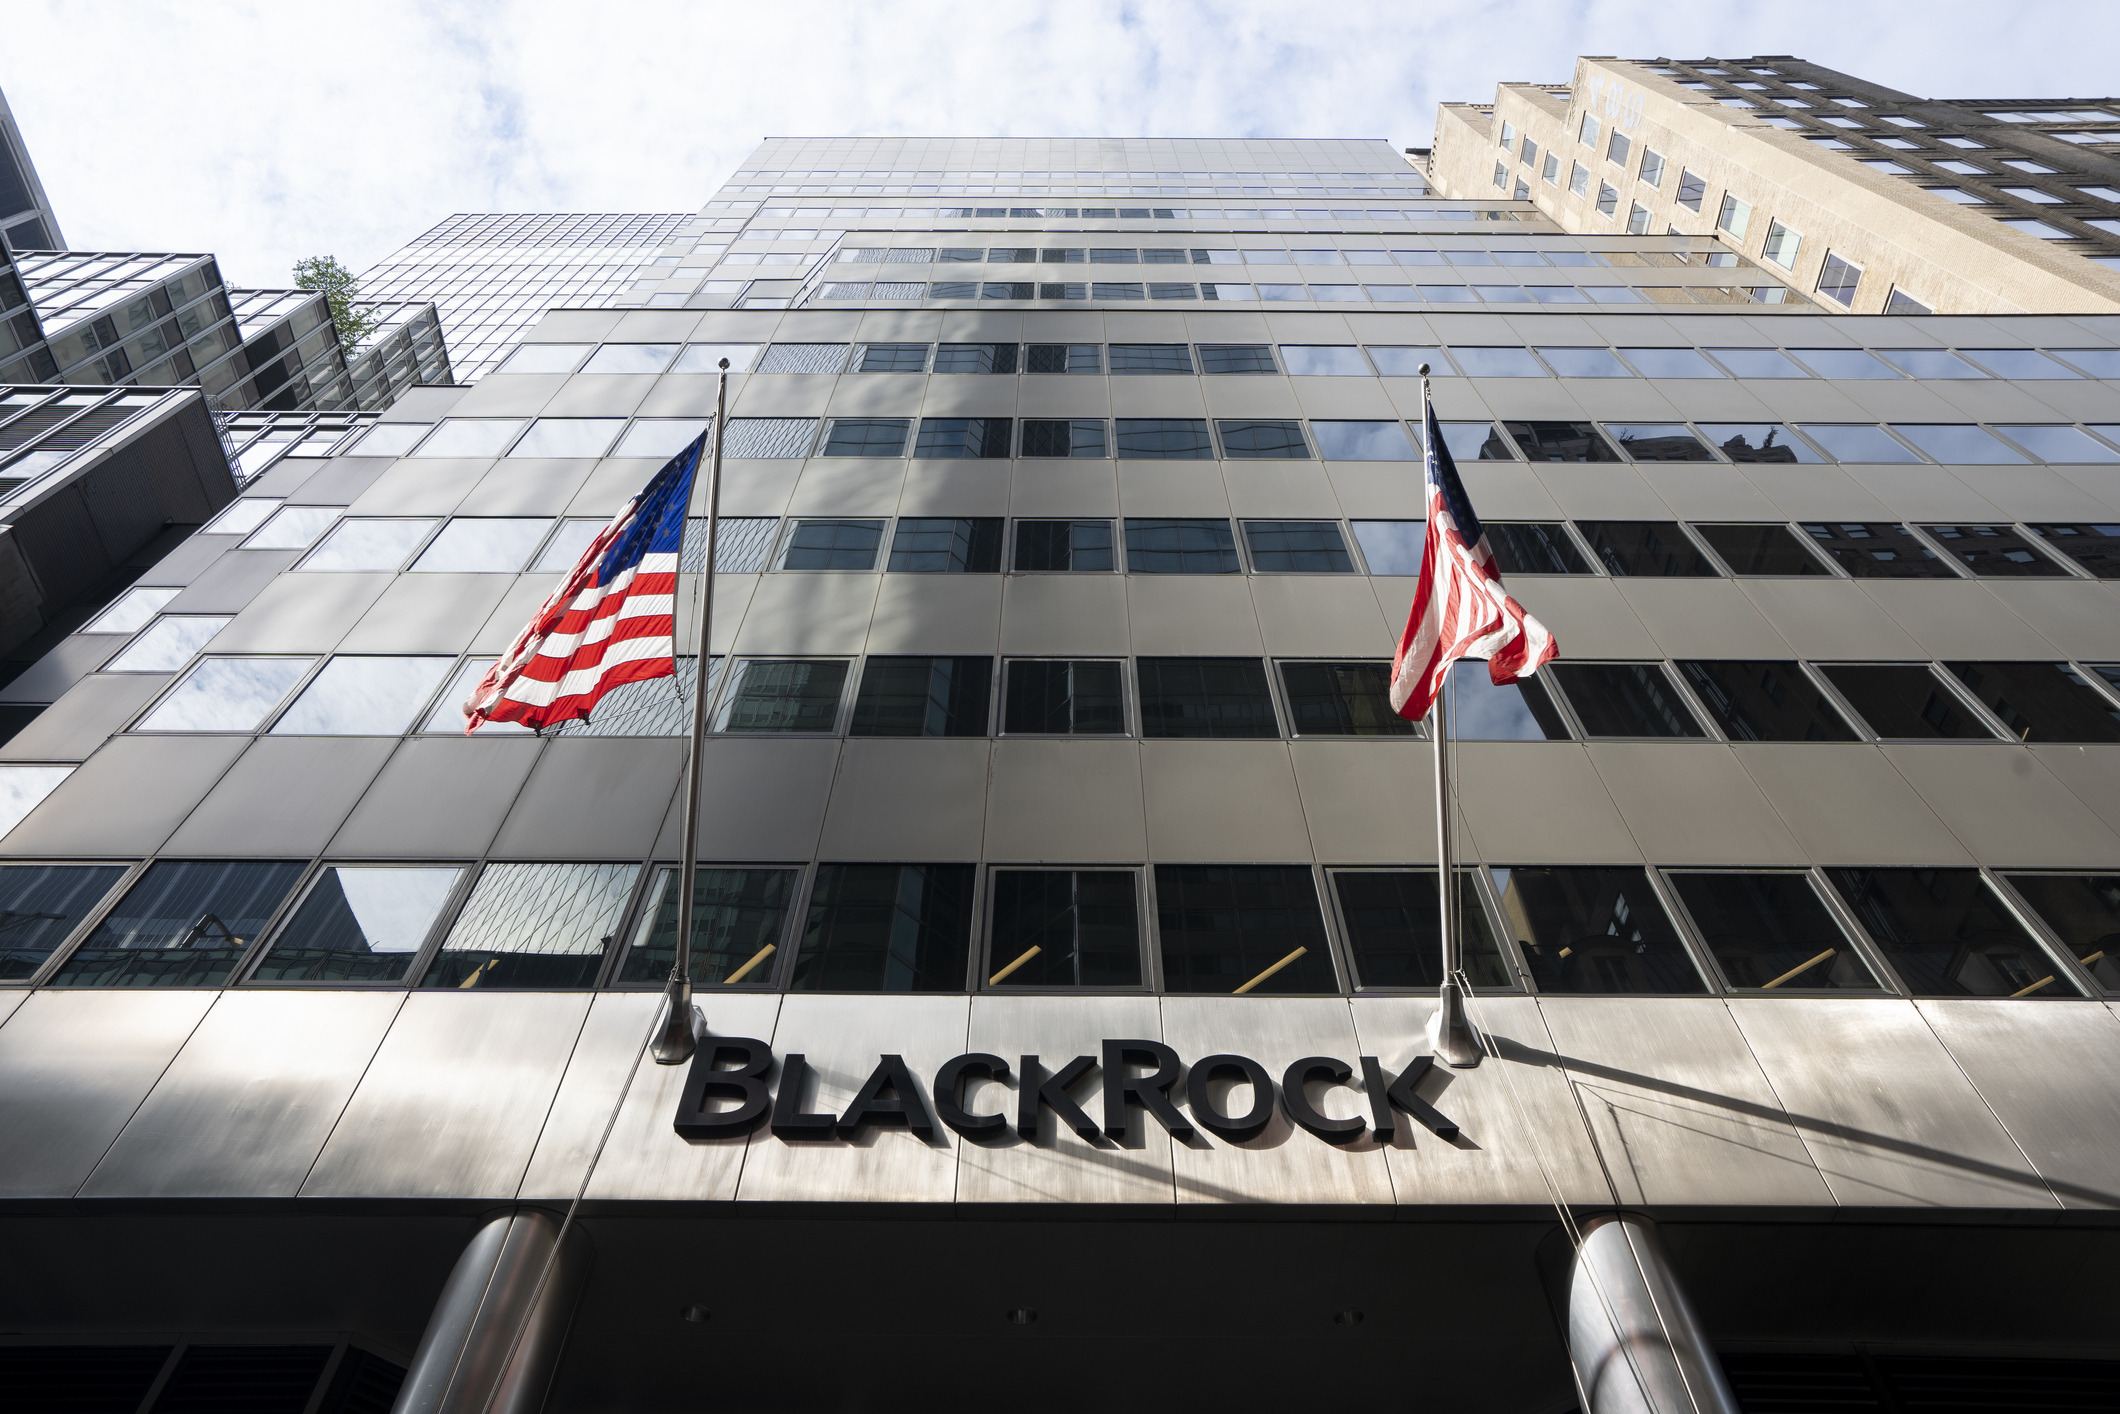 Blackrock Tops Bitcoin Ownership, Surpasses OKX, Kraken